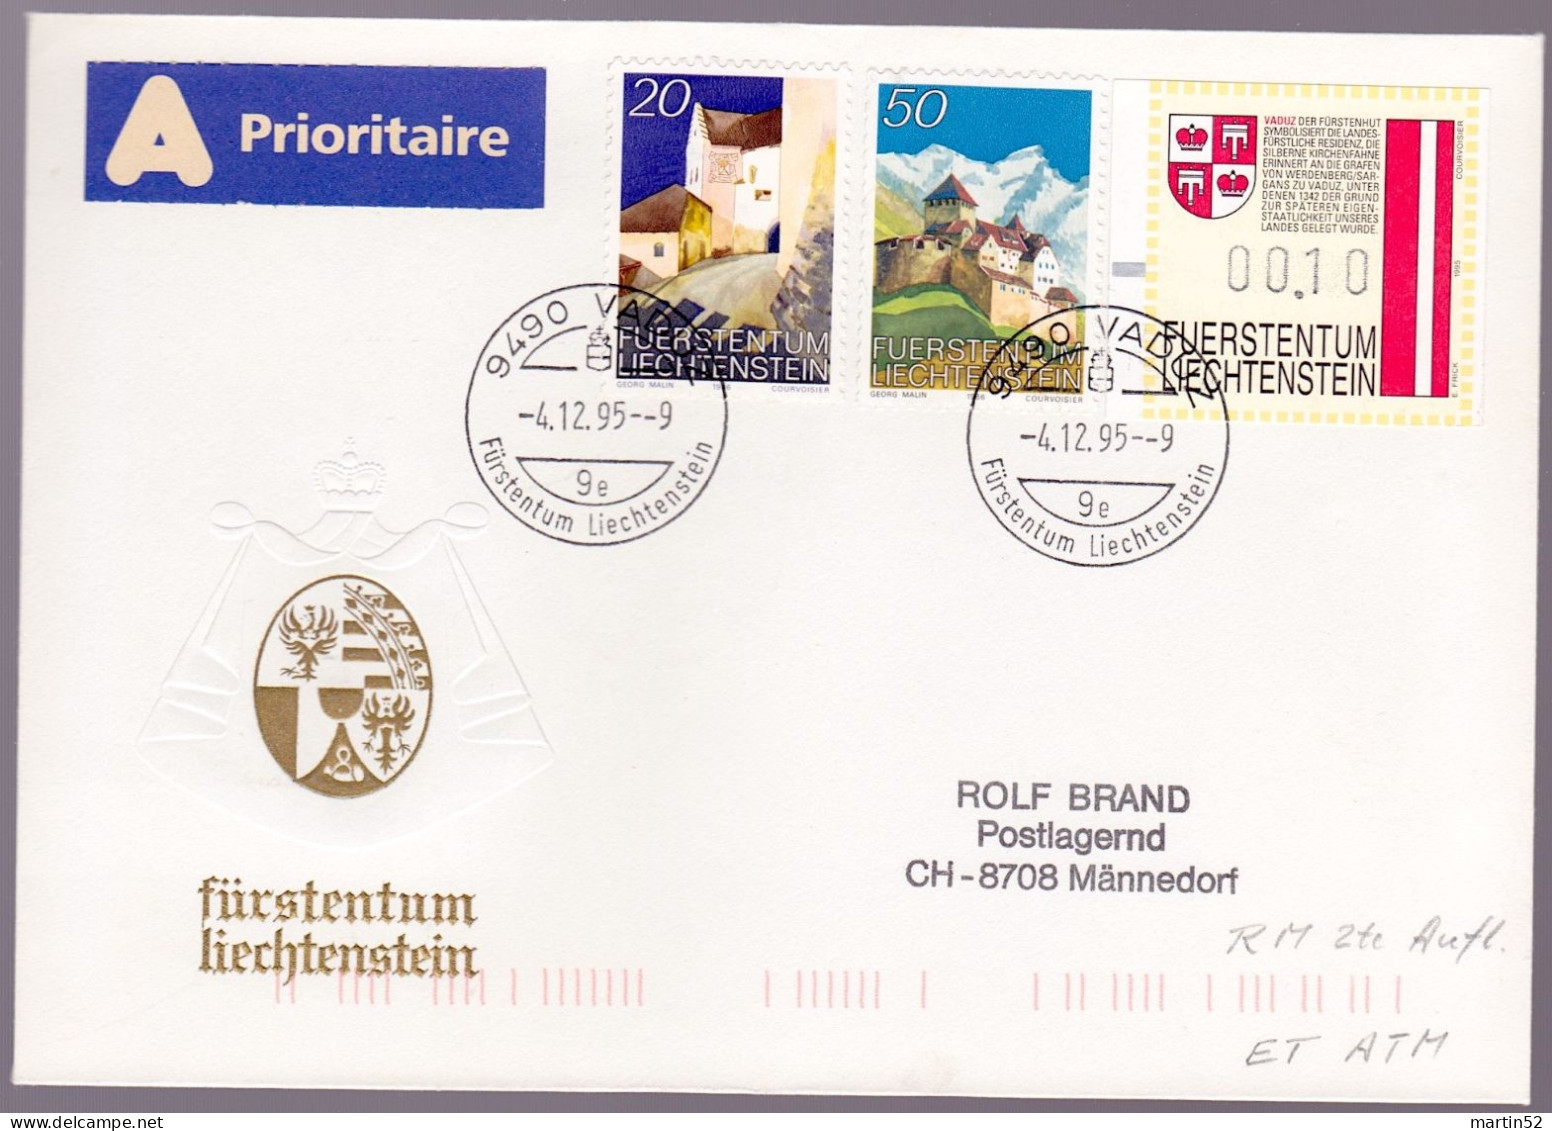 Liechtenstein 1995: Rollenmarken Rouleaux Coil-stamps Zu 836-837R Mi 896-897 Yv 837-838 + ATM Mit O VADUZ 4.12.96 - Errores & Curiosidades